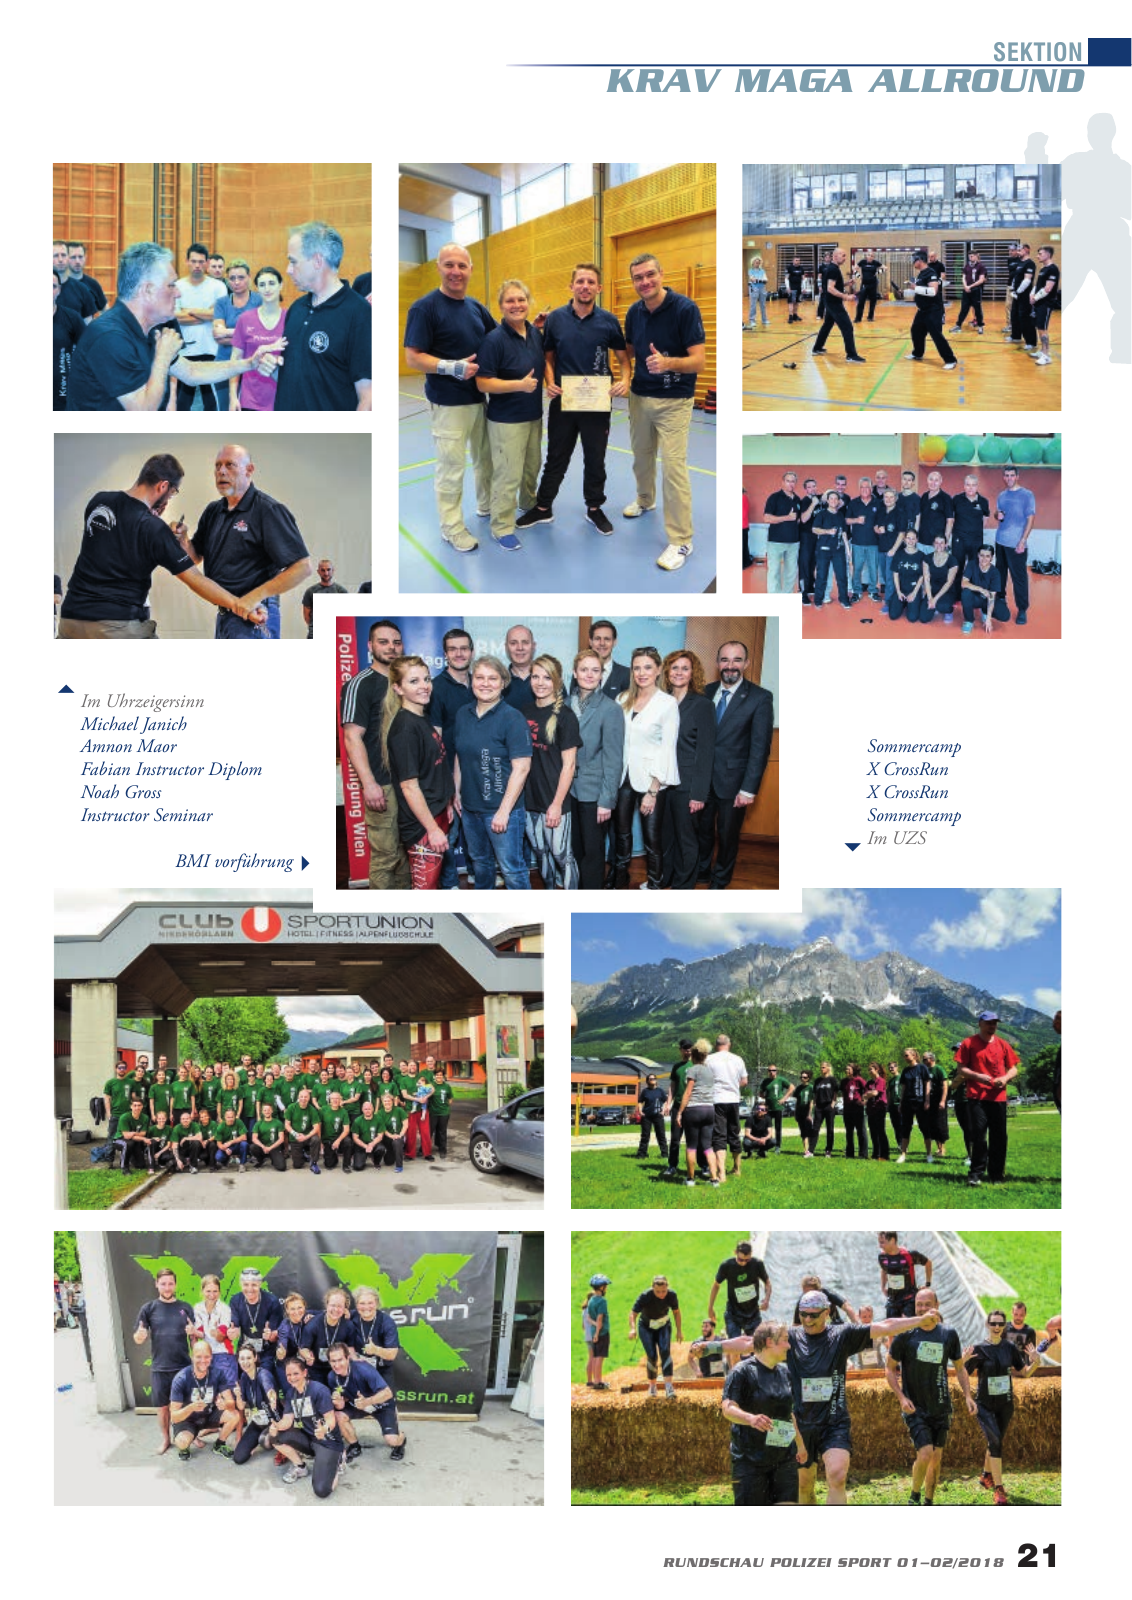 Vorschau Rundschau Polizei Sport 01-02/2018 Seite 21